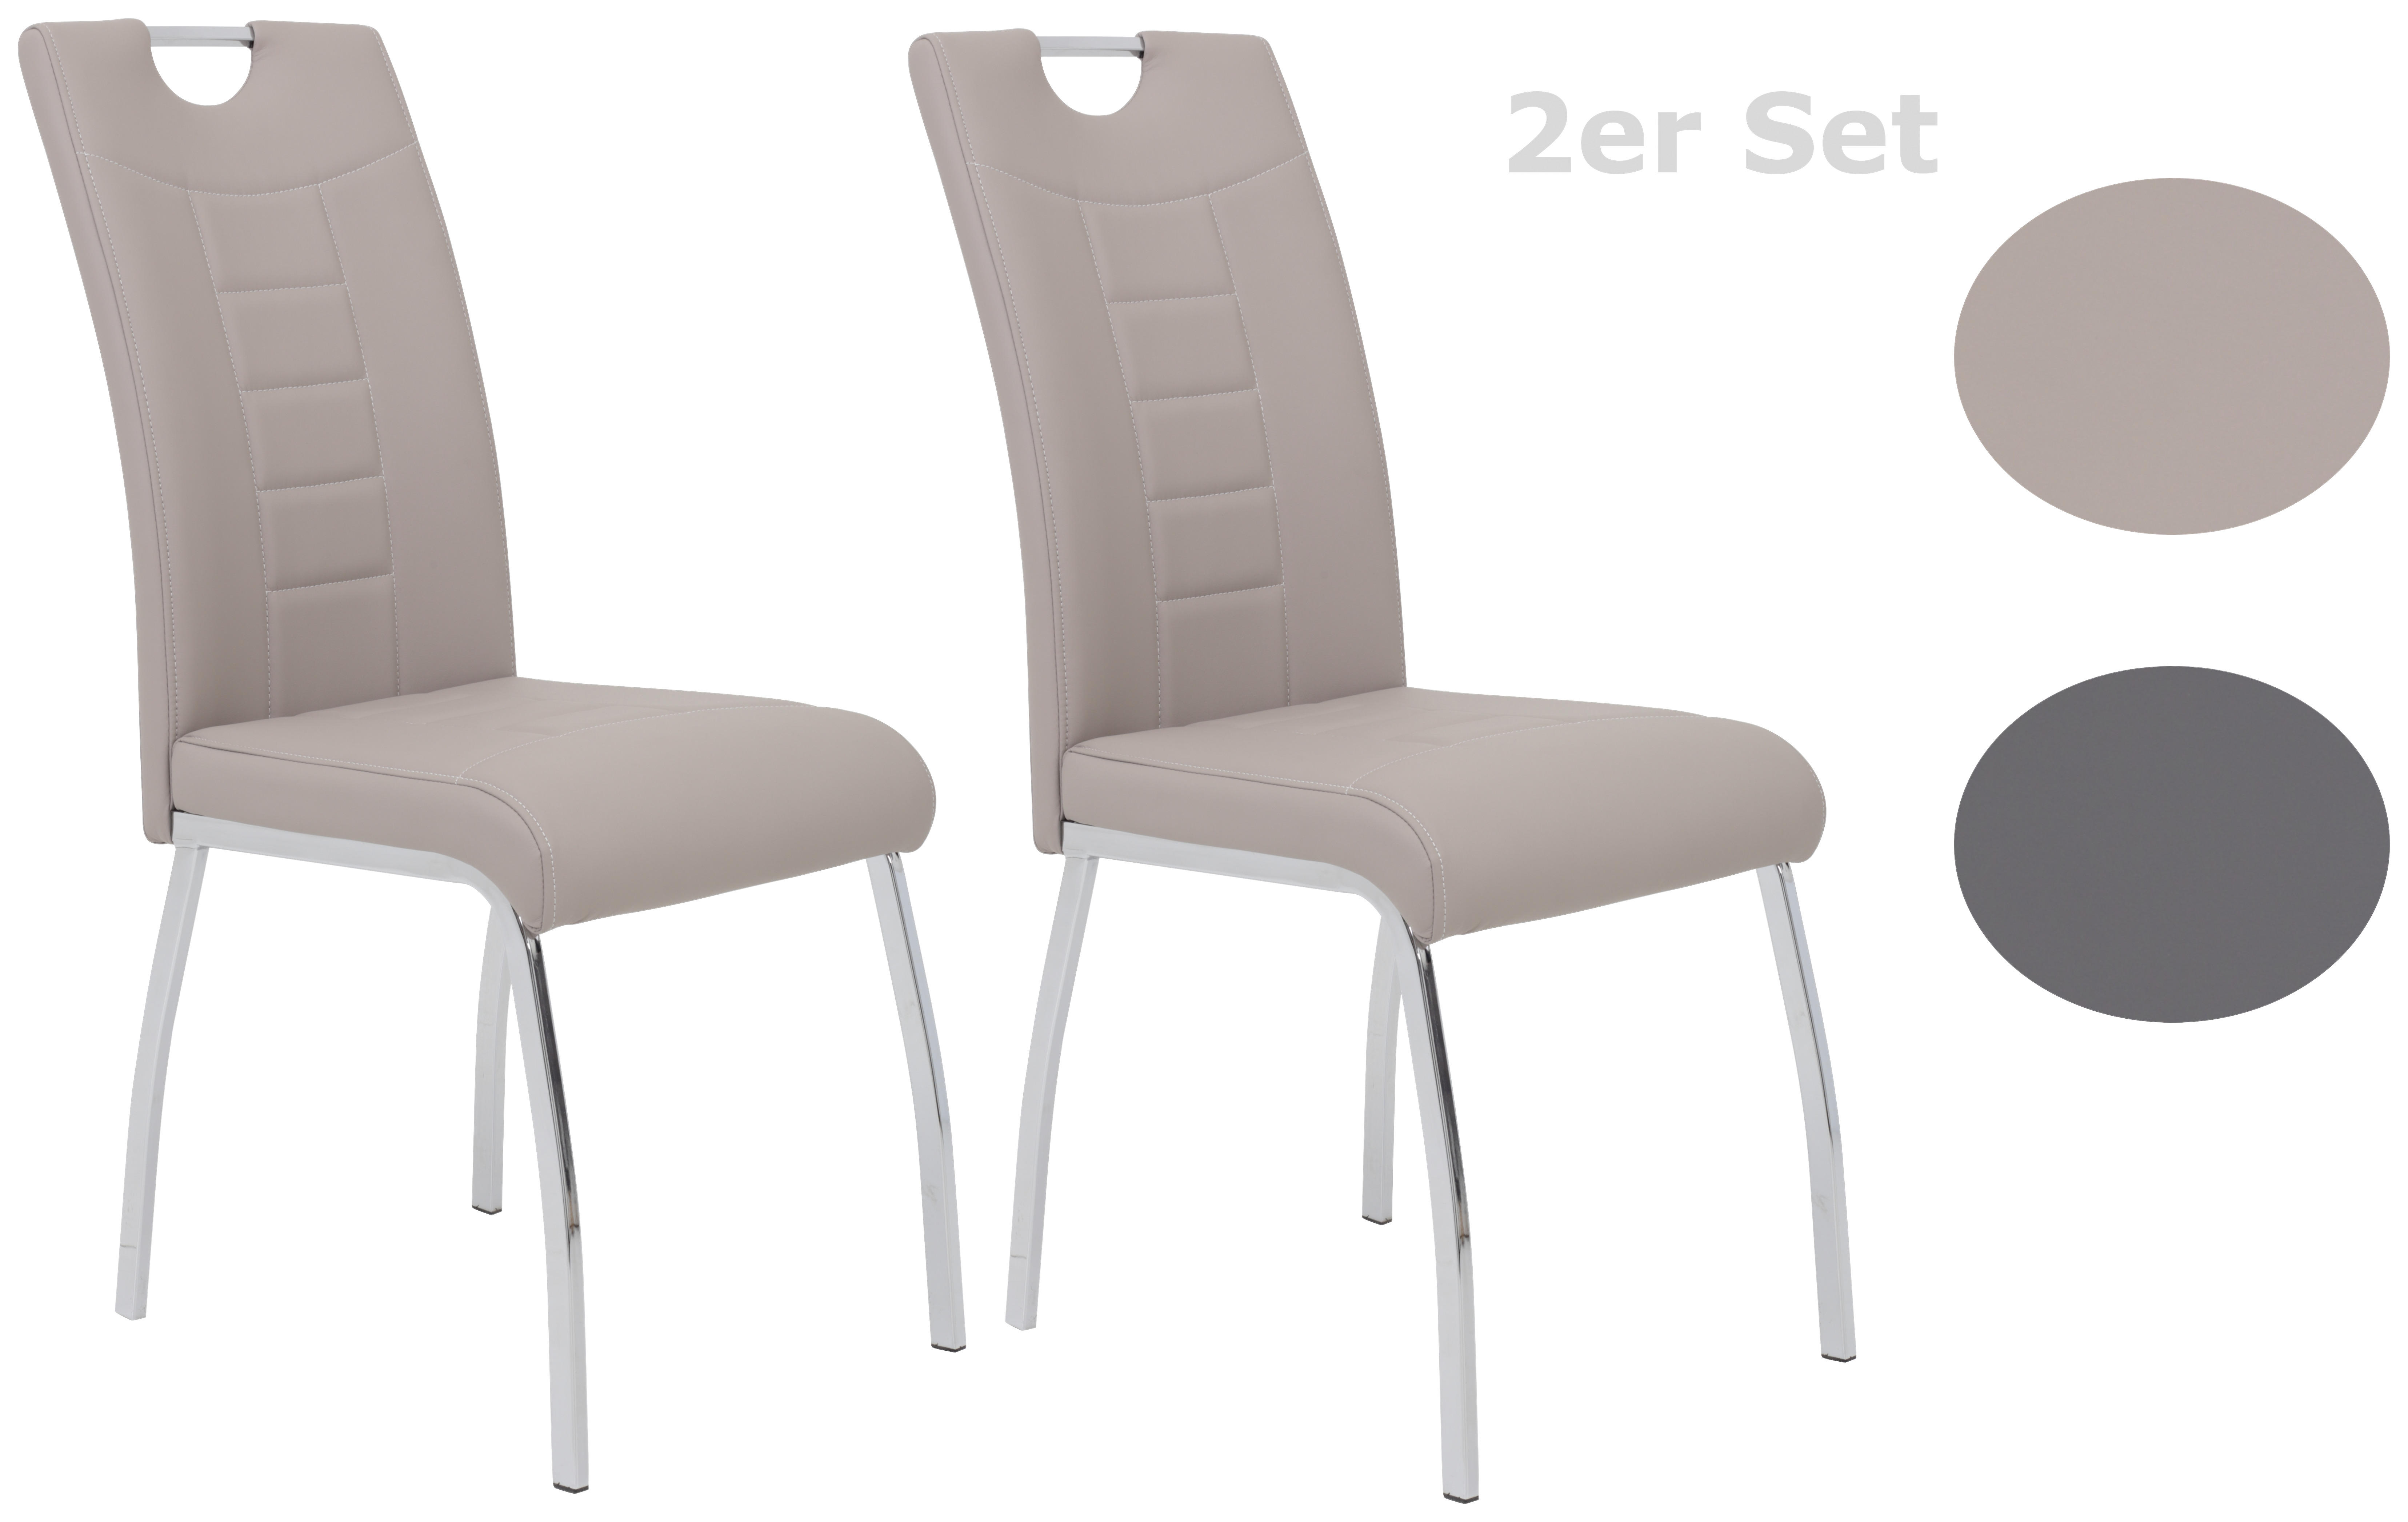 STUHL-SET 2 Stück  in Stahl Lederlook  - Chromfarben/Weiß, MODERN, Textil/Metall (43/100/64cm) - MID.YOU